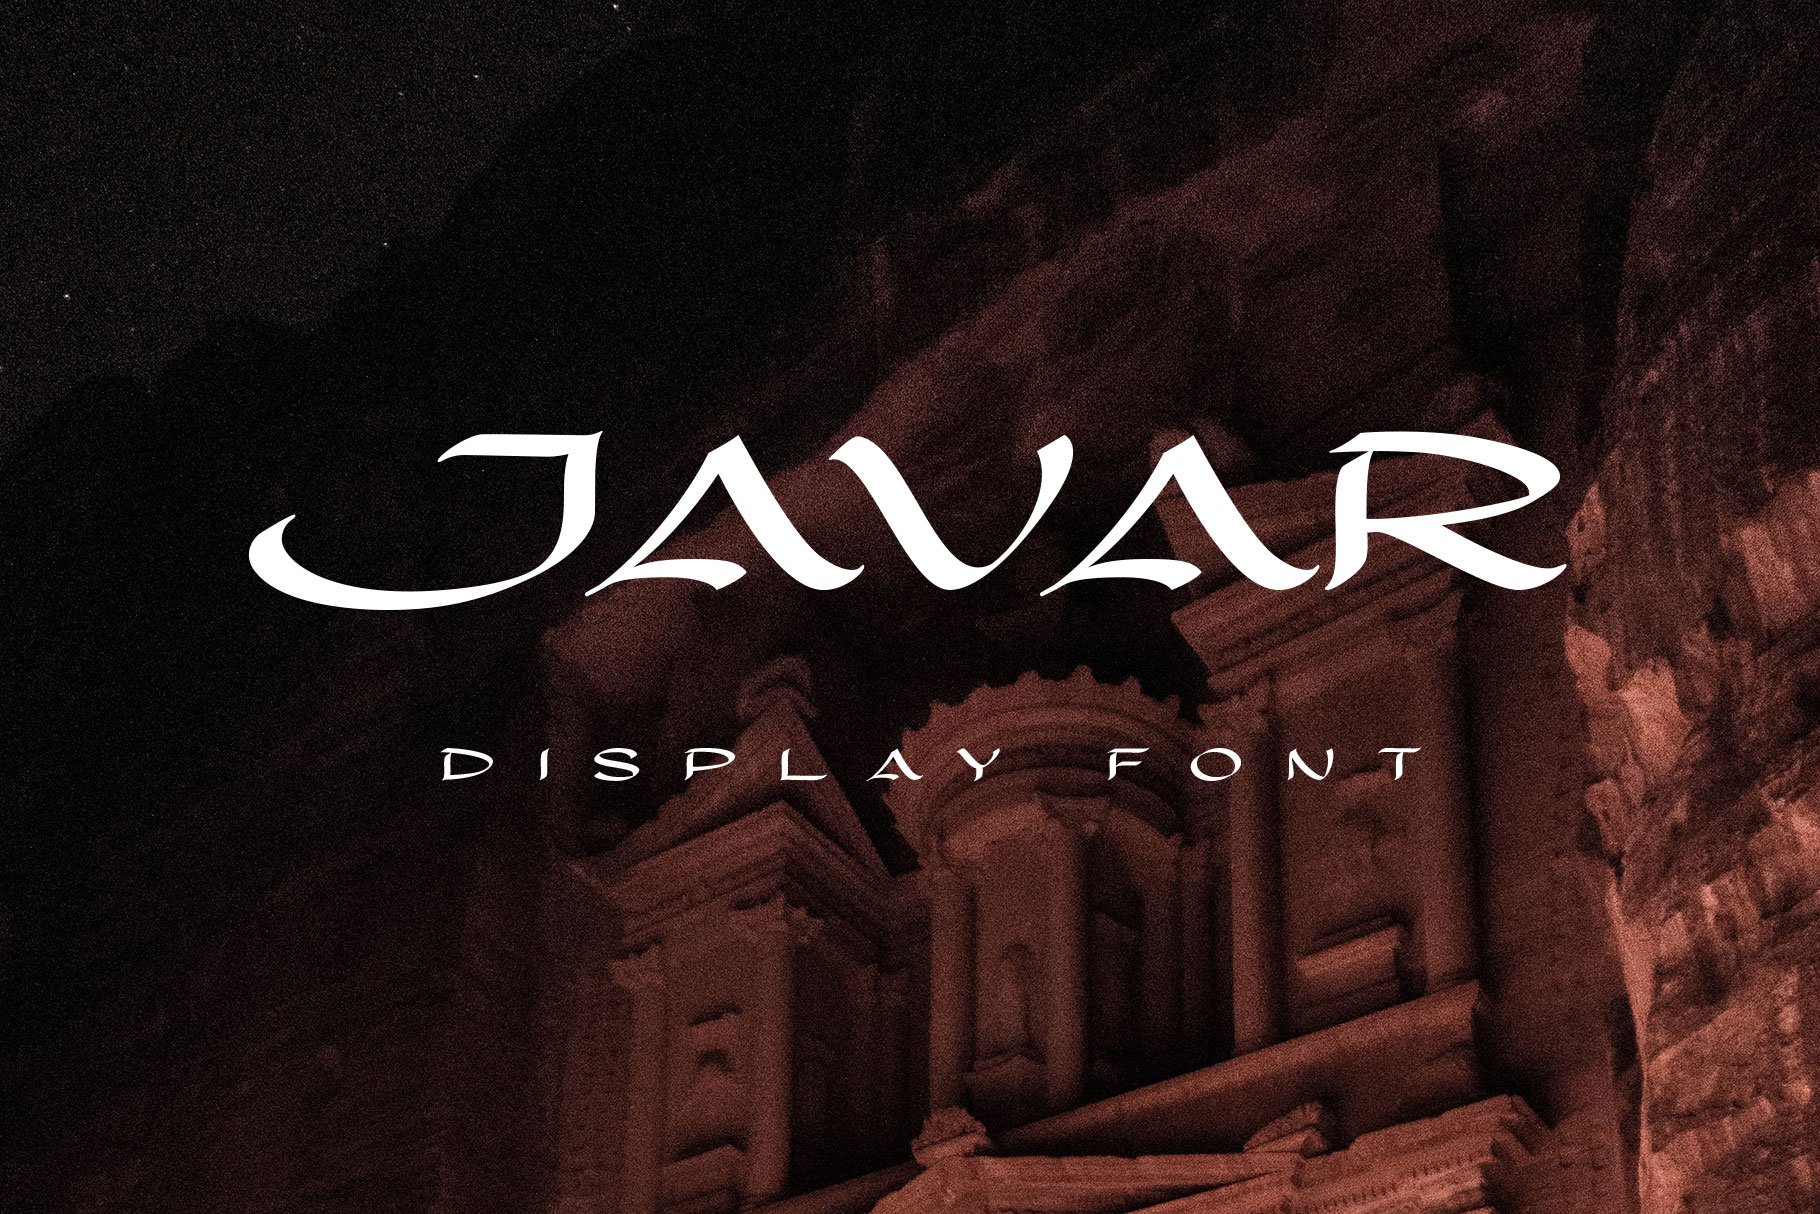 Javar - Display Font cover image.